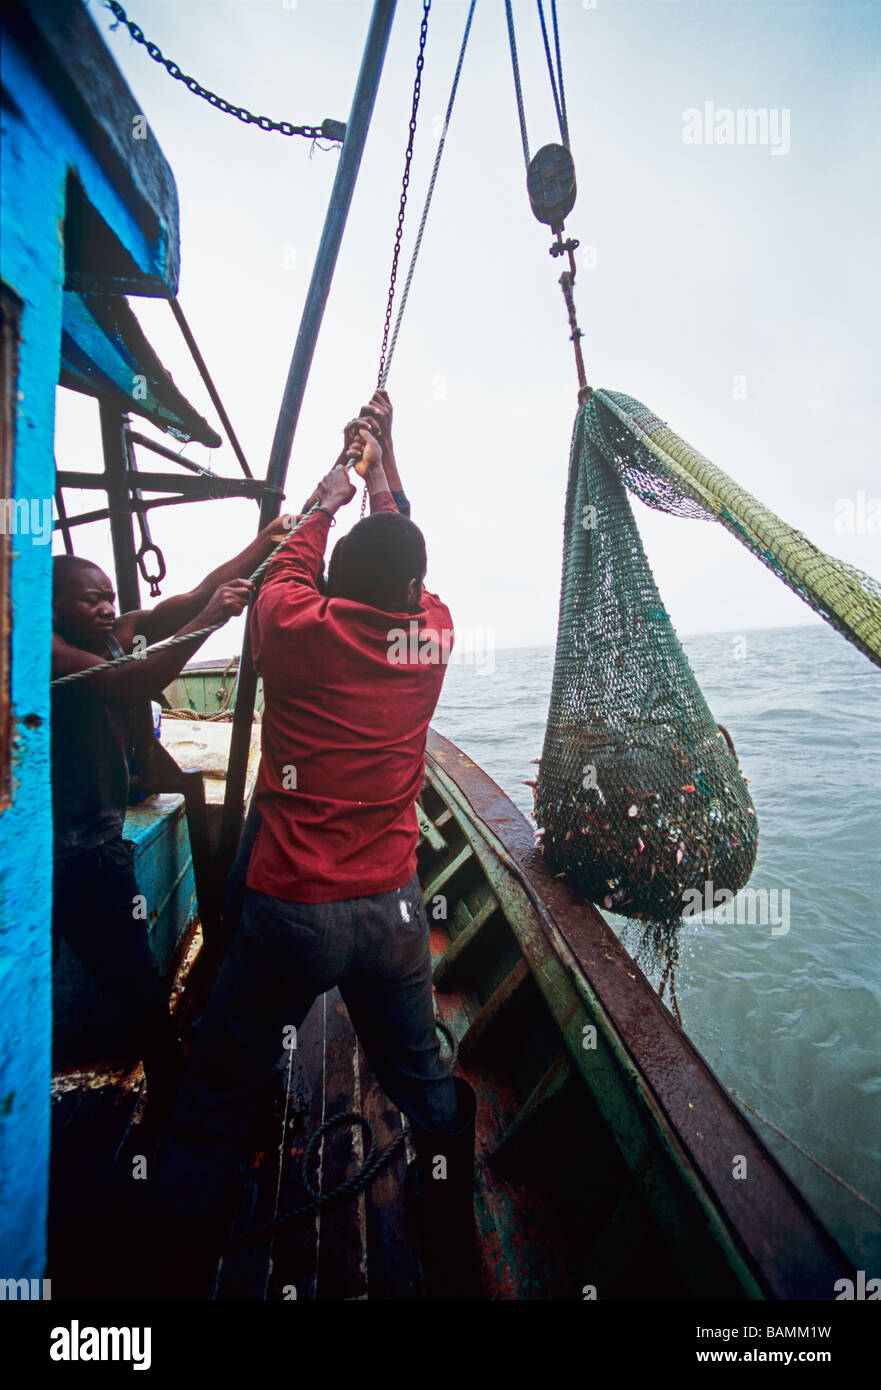 Afficher pêcheur filet plein de crevettes et les prises accessoires à bord de chalutiers semi industrial shrimp Maputo Mozambique Banque D'Images